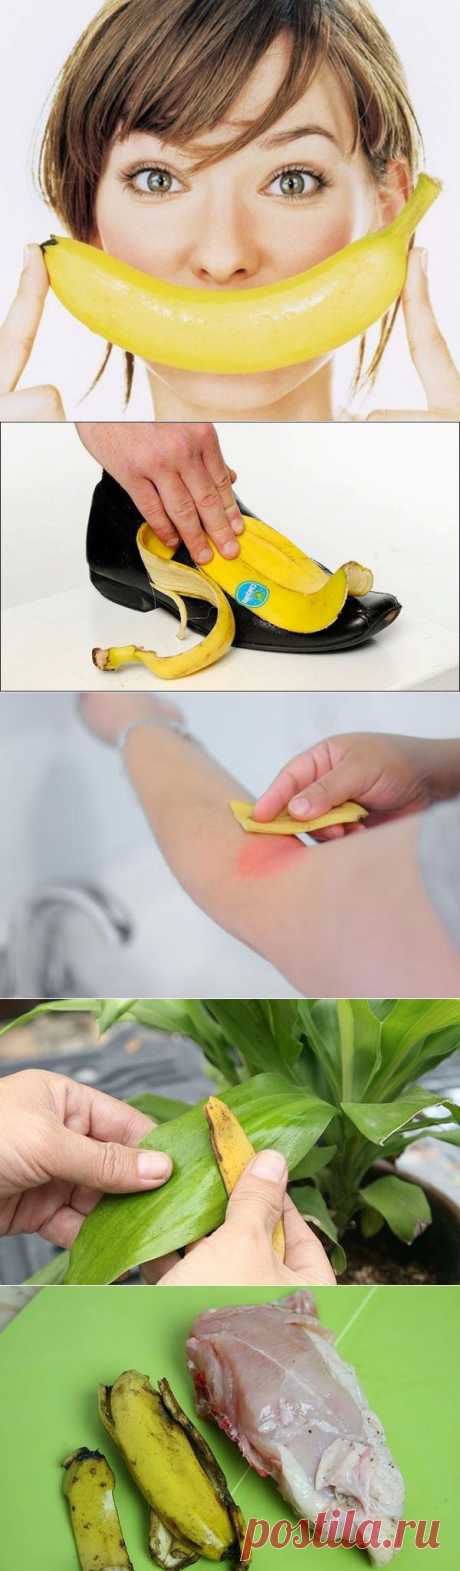 Использование банановой кожуры - Делимся советами